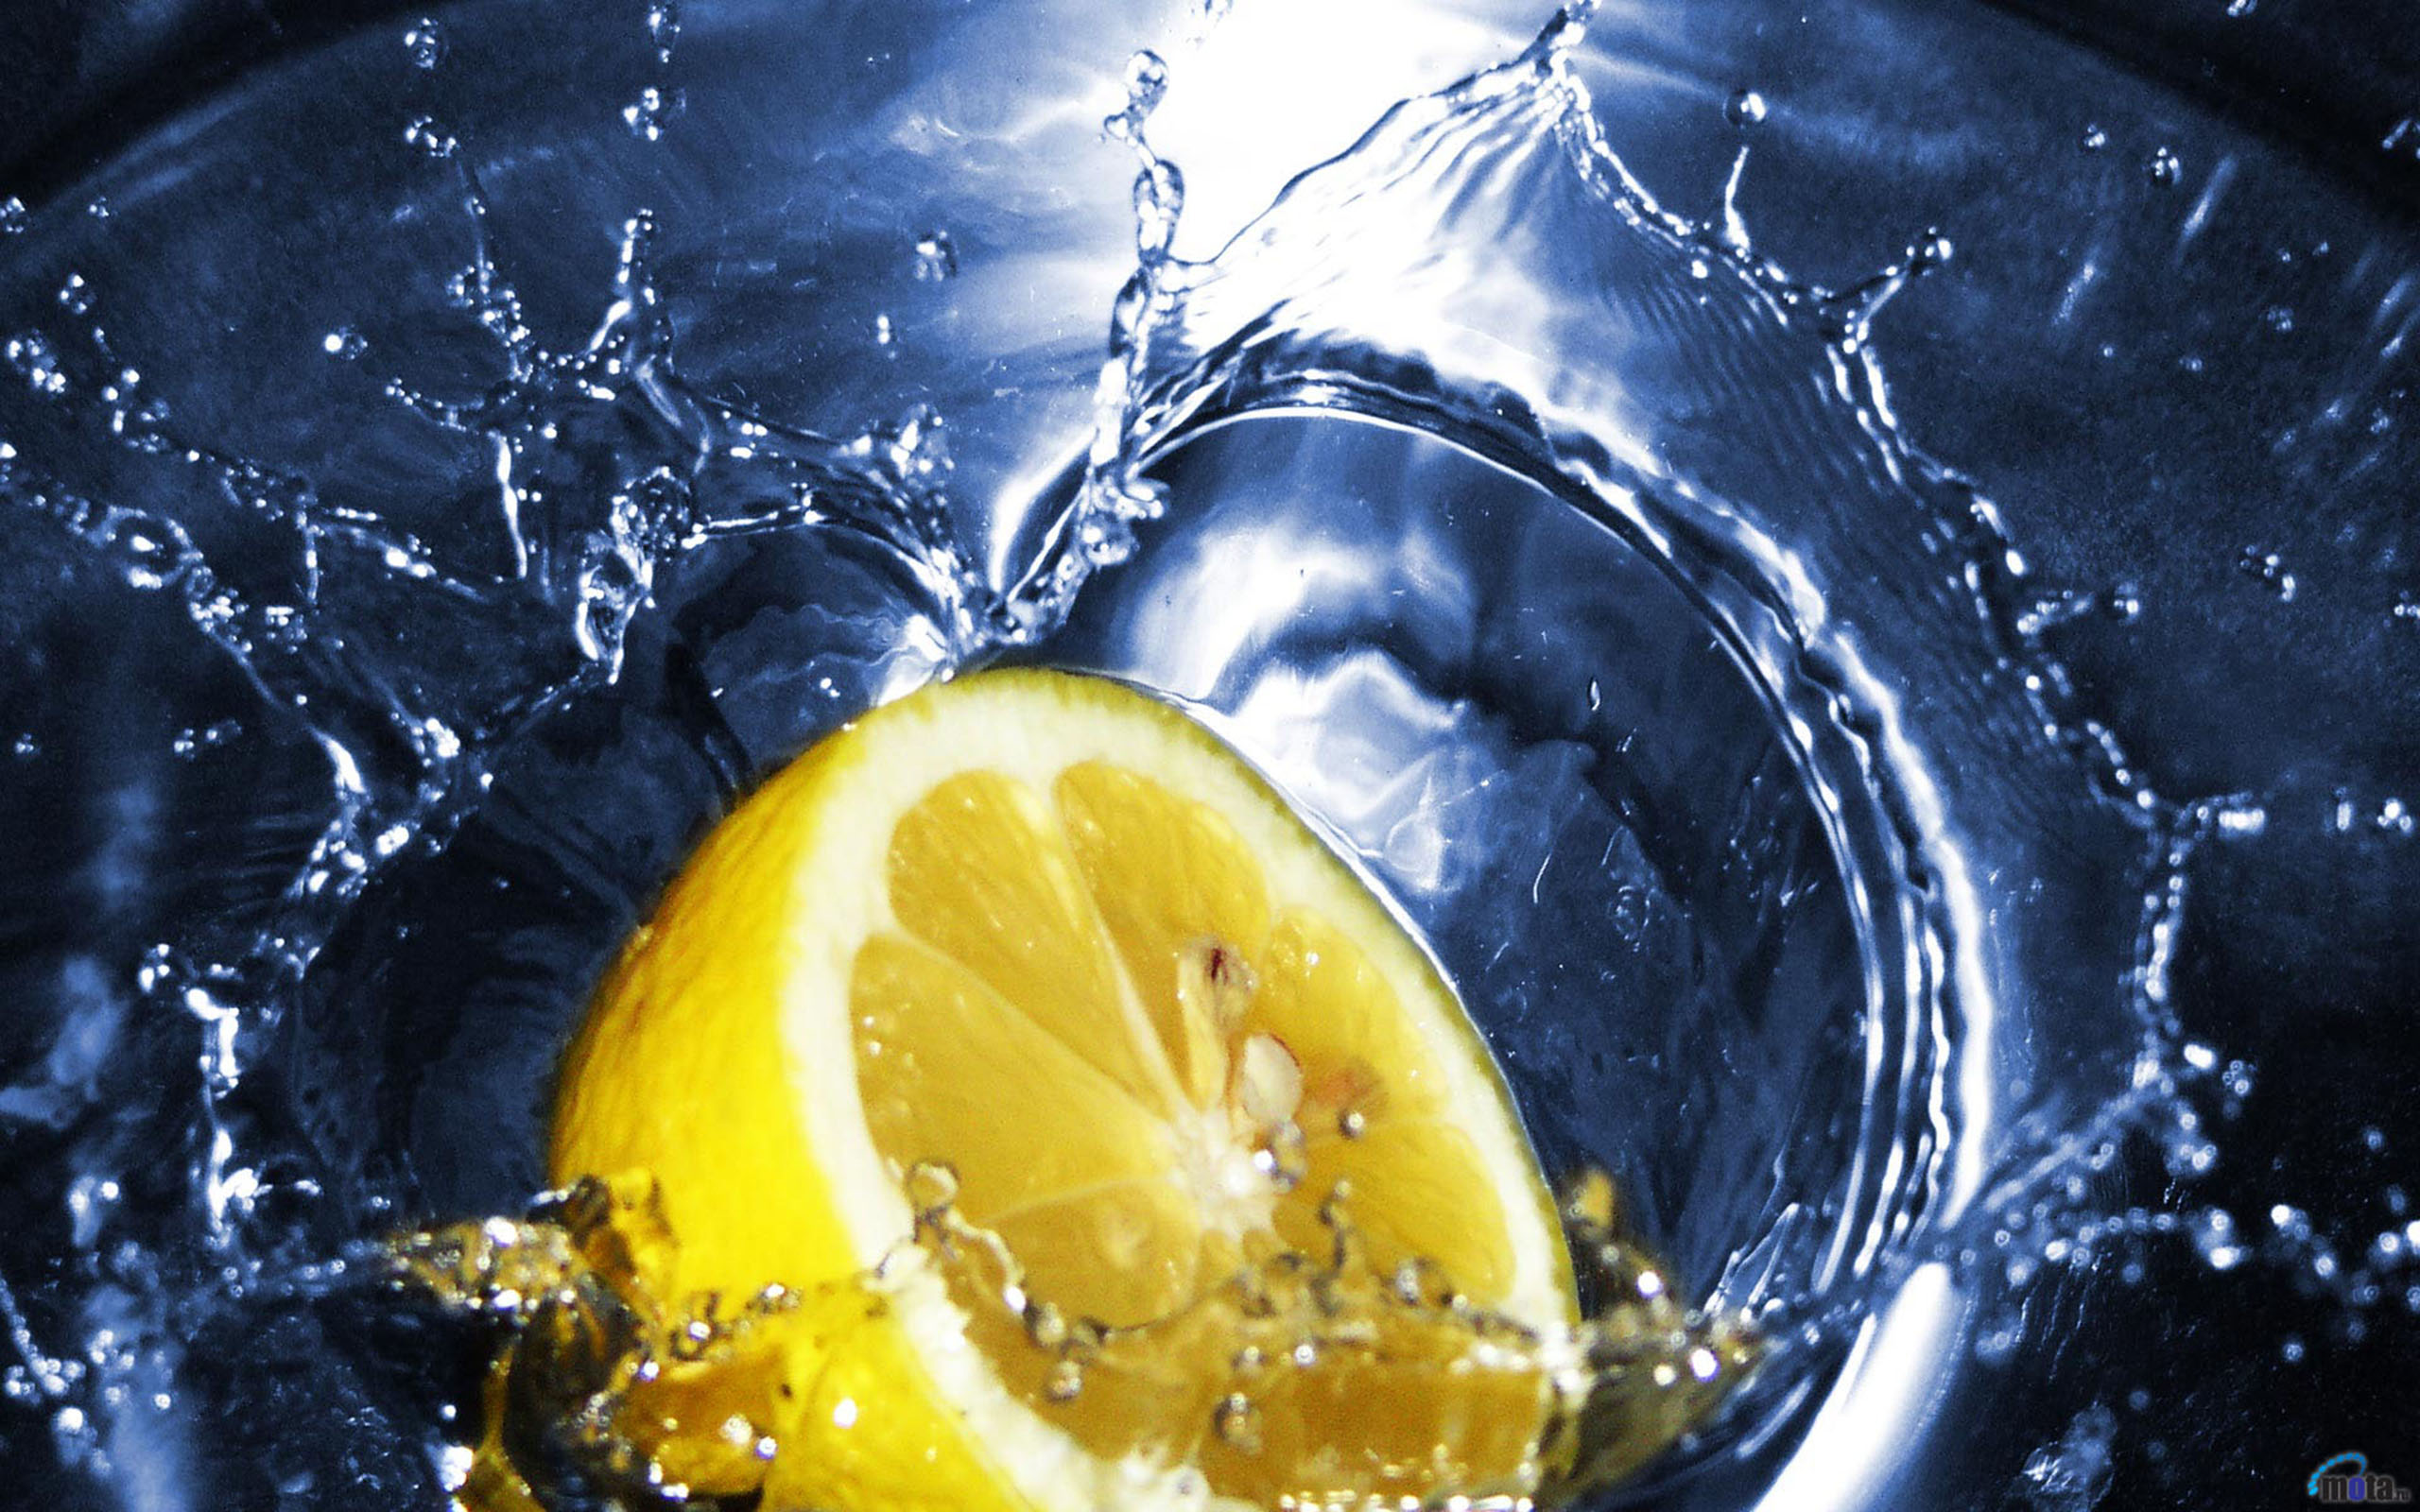 лимон в воде, брызги, цитрус, вода, капли, креатив, обои, Lemon in water, spray, citrus, water, drops, creative, wallpaper